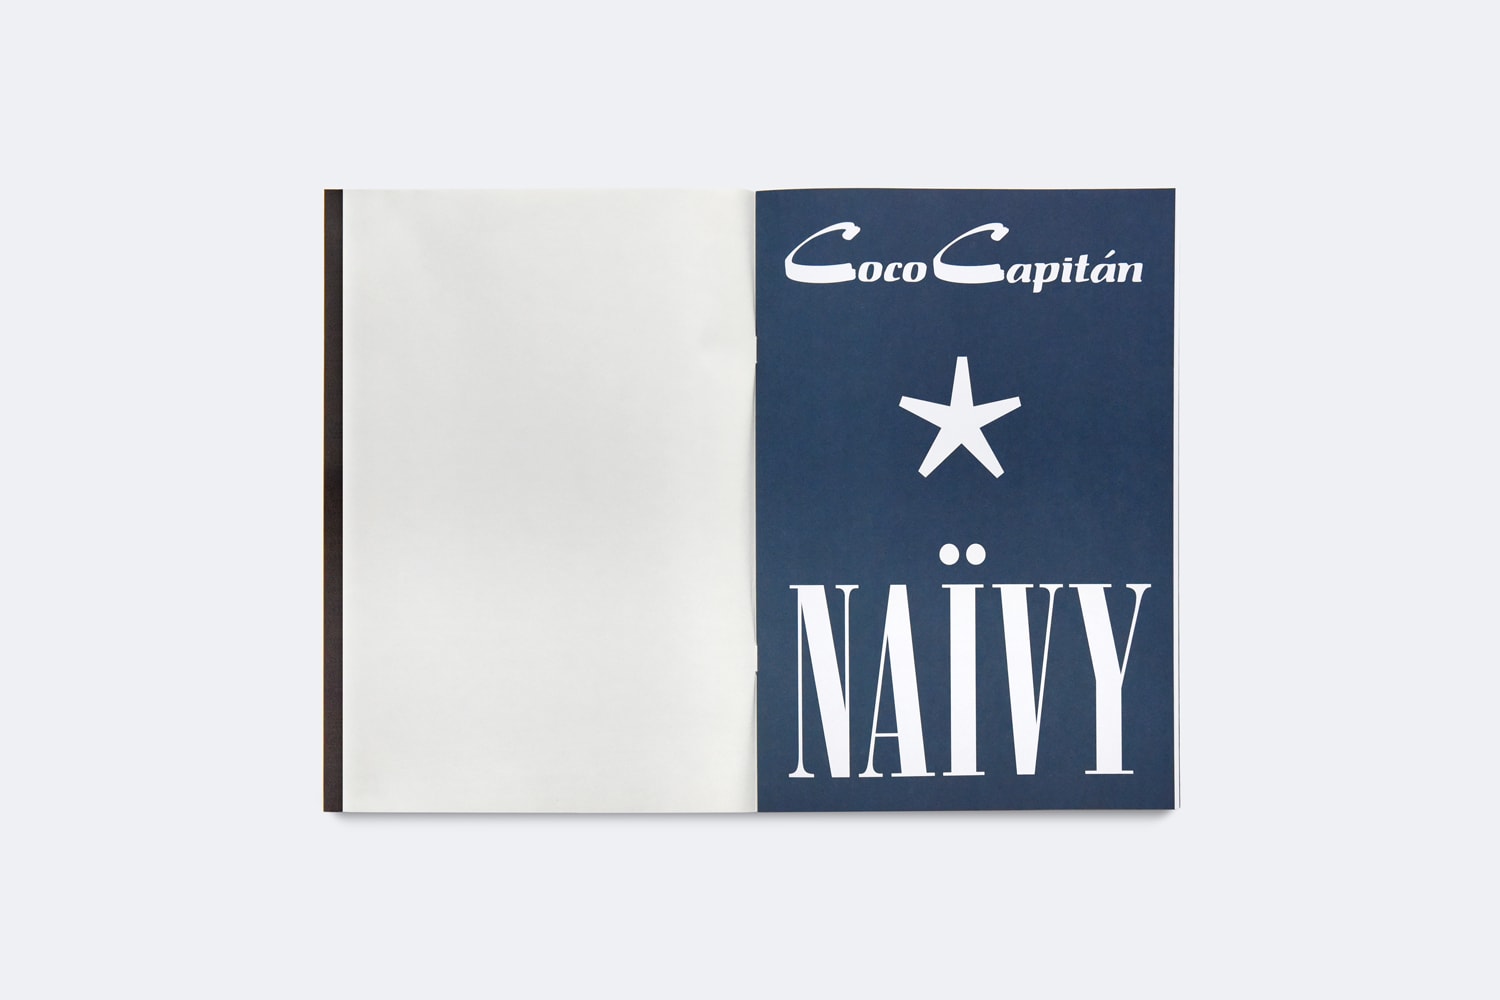 coco capitan naivy book release maximillian william